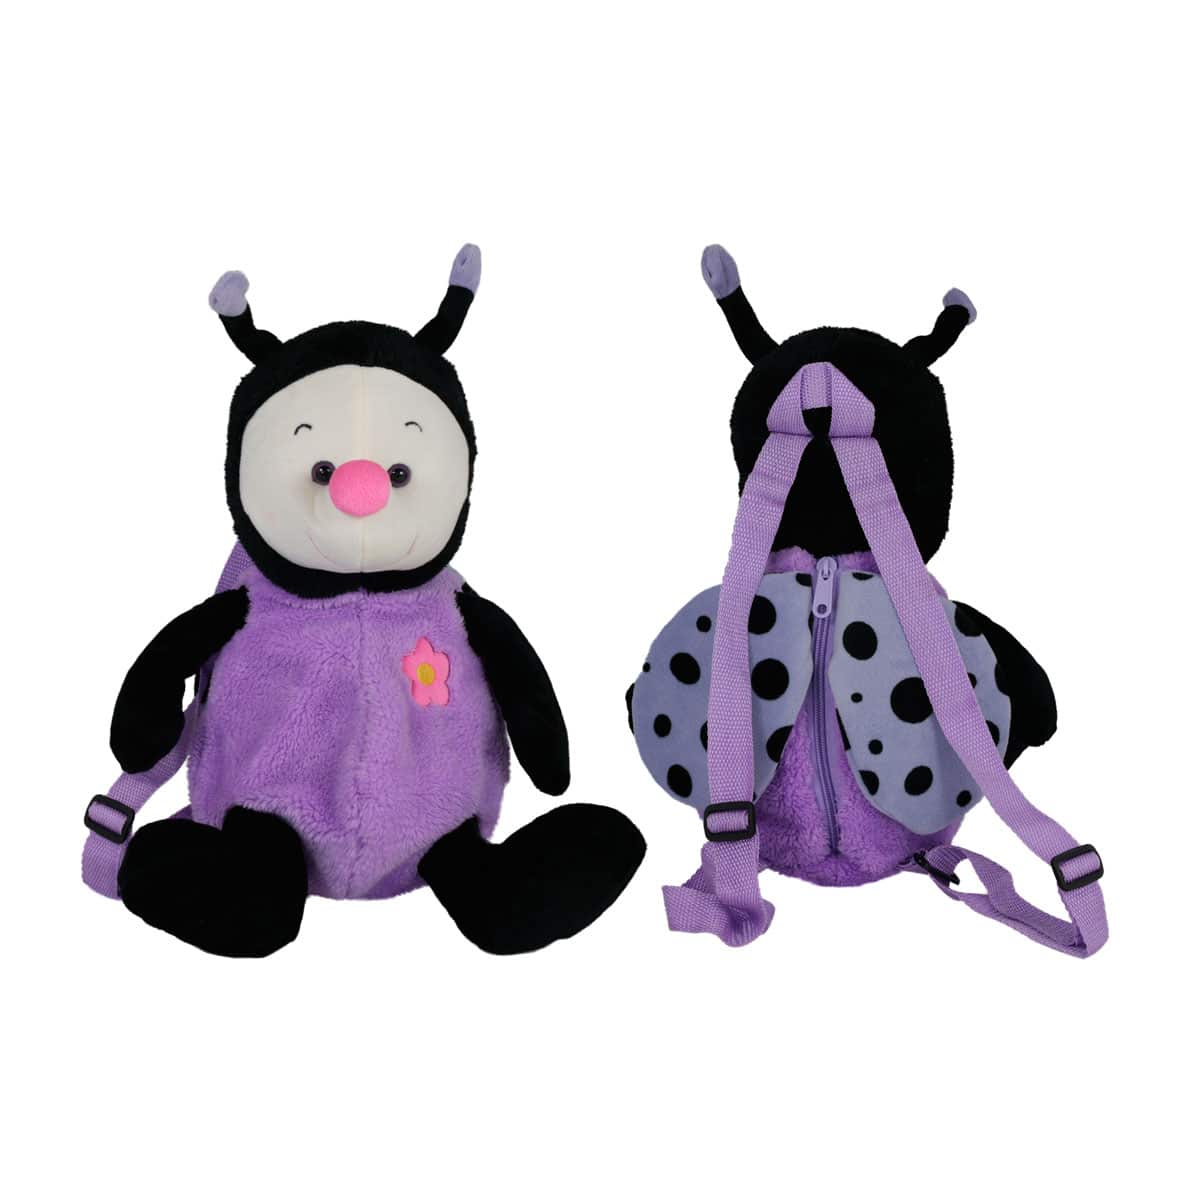 Backpack ladybug - Purple